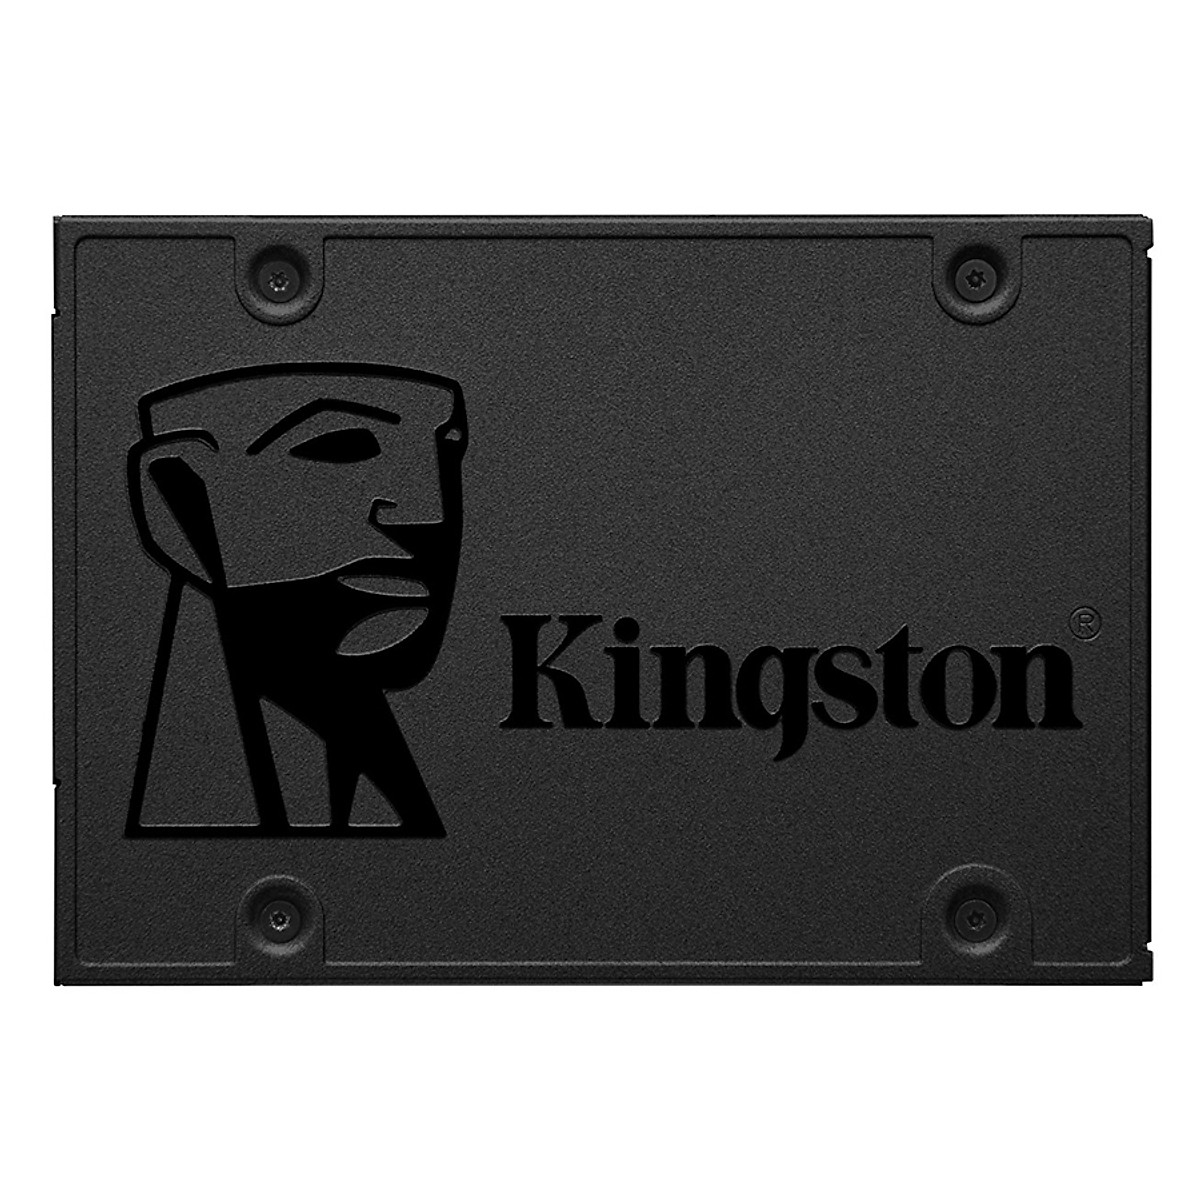  Ổ cứng SSD Kingston SA400S37 SATA 2.5 inch 240GB 